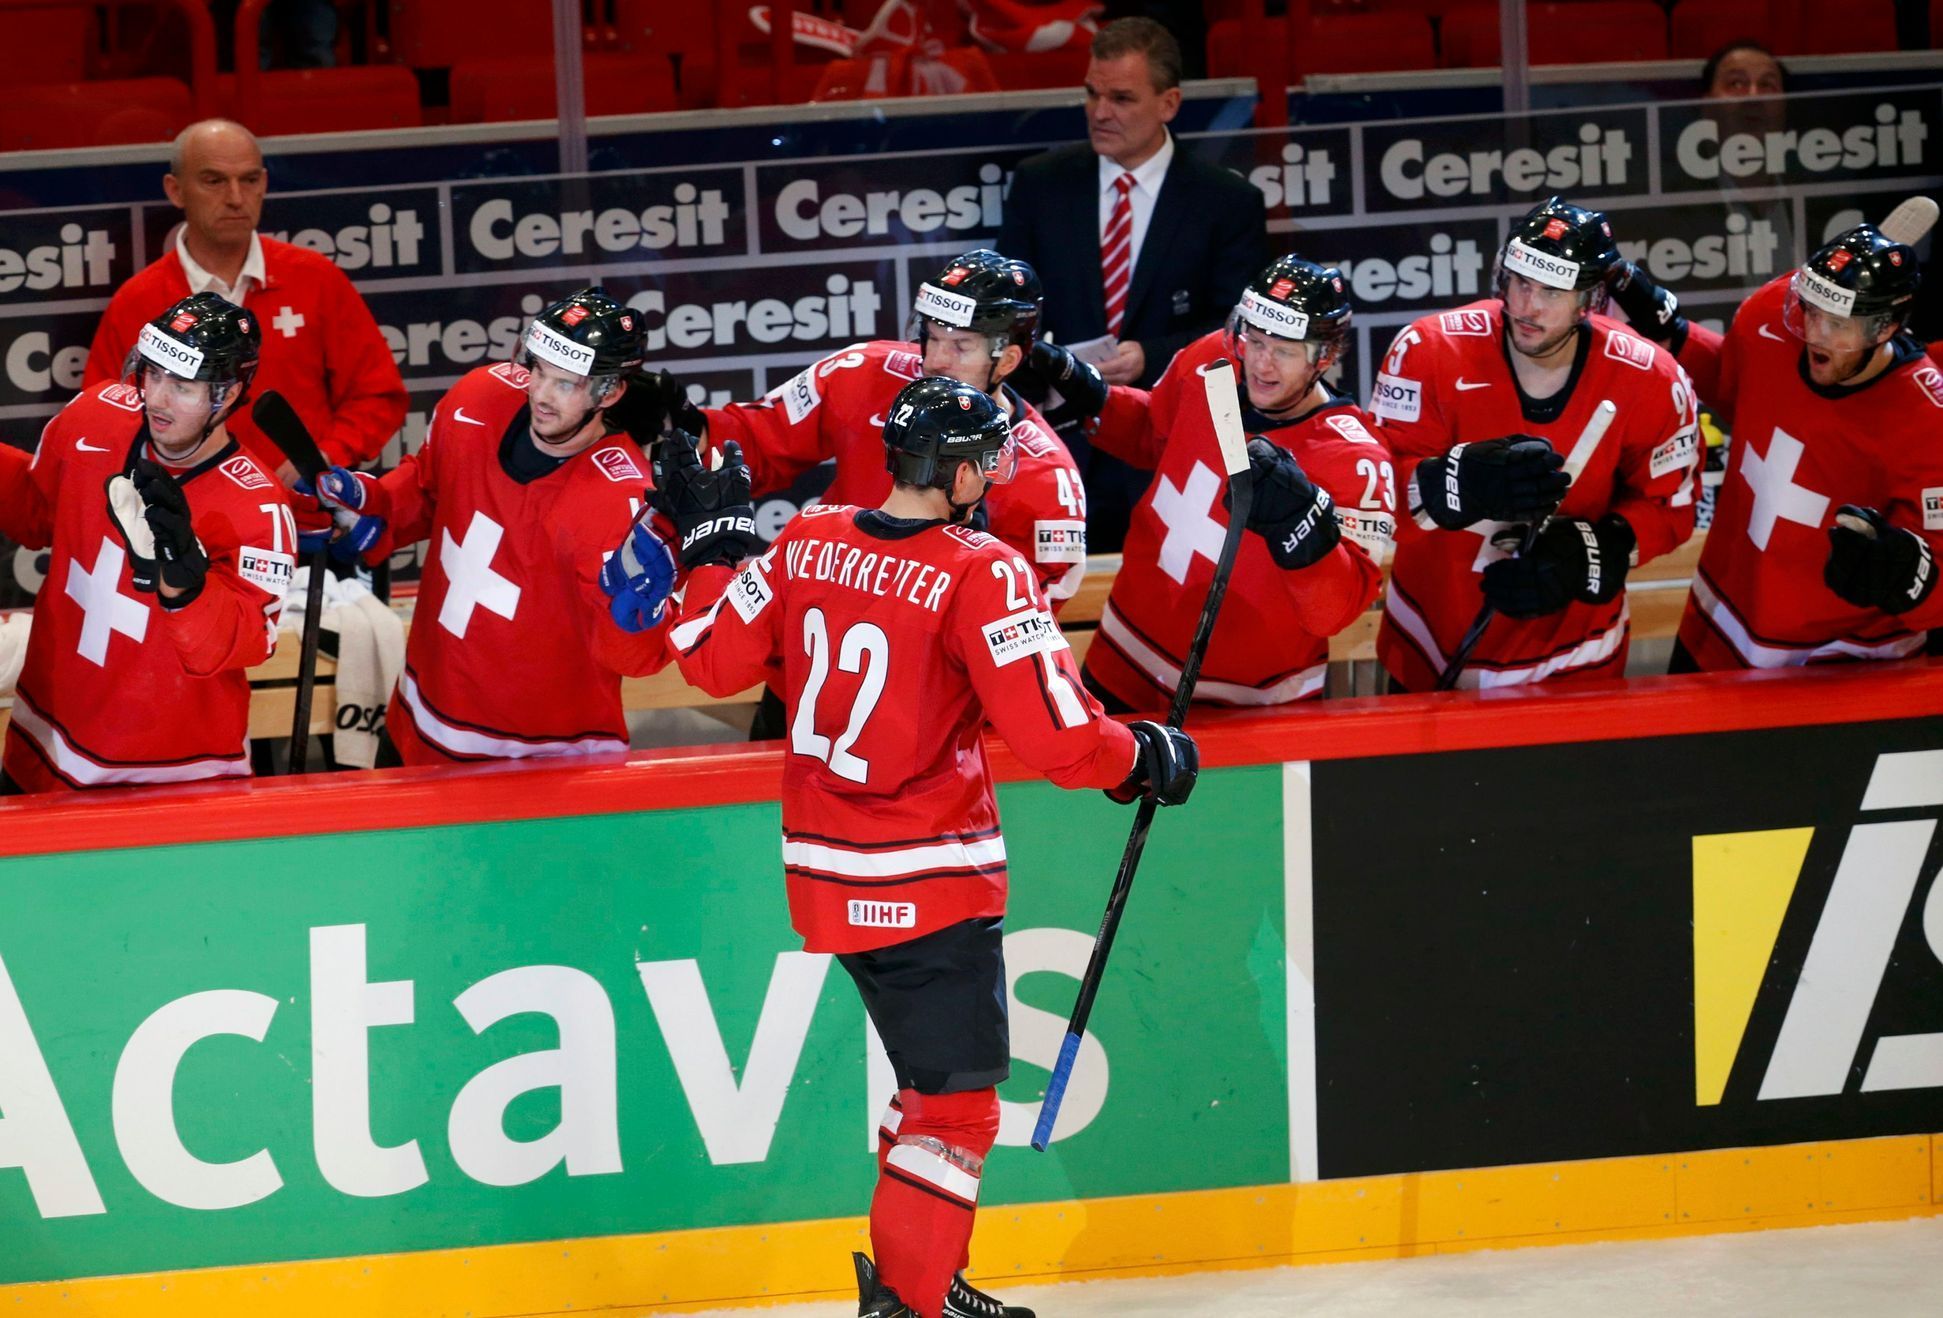 MS v hokeji 2013, Kanada - Švýcarsko: Švýcaři slaví gól na 2:2